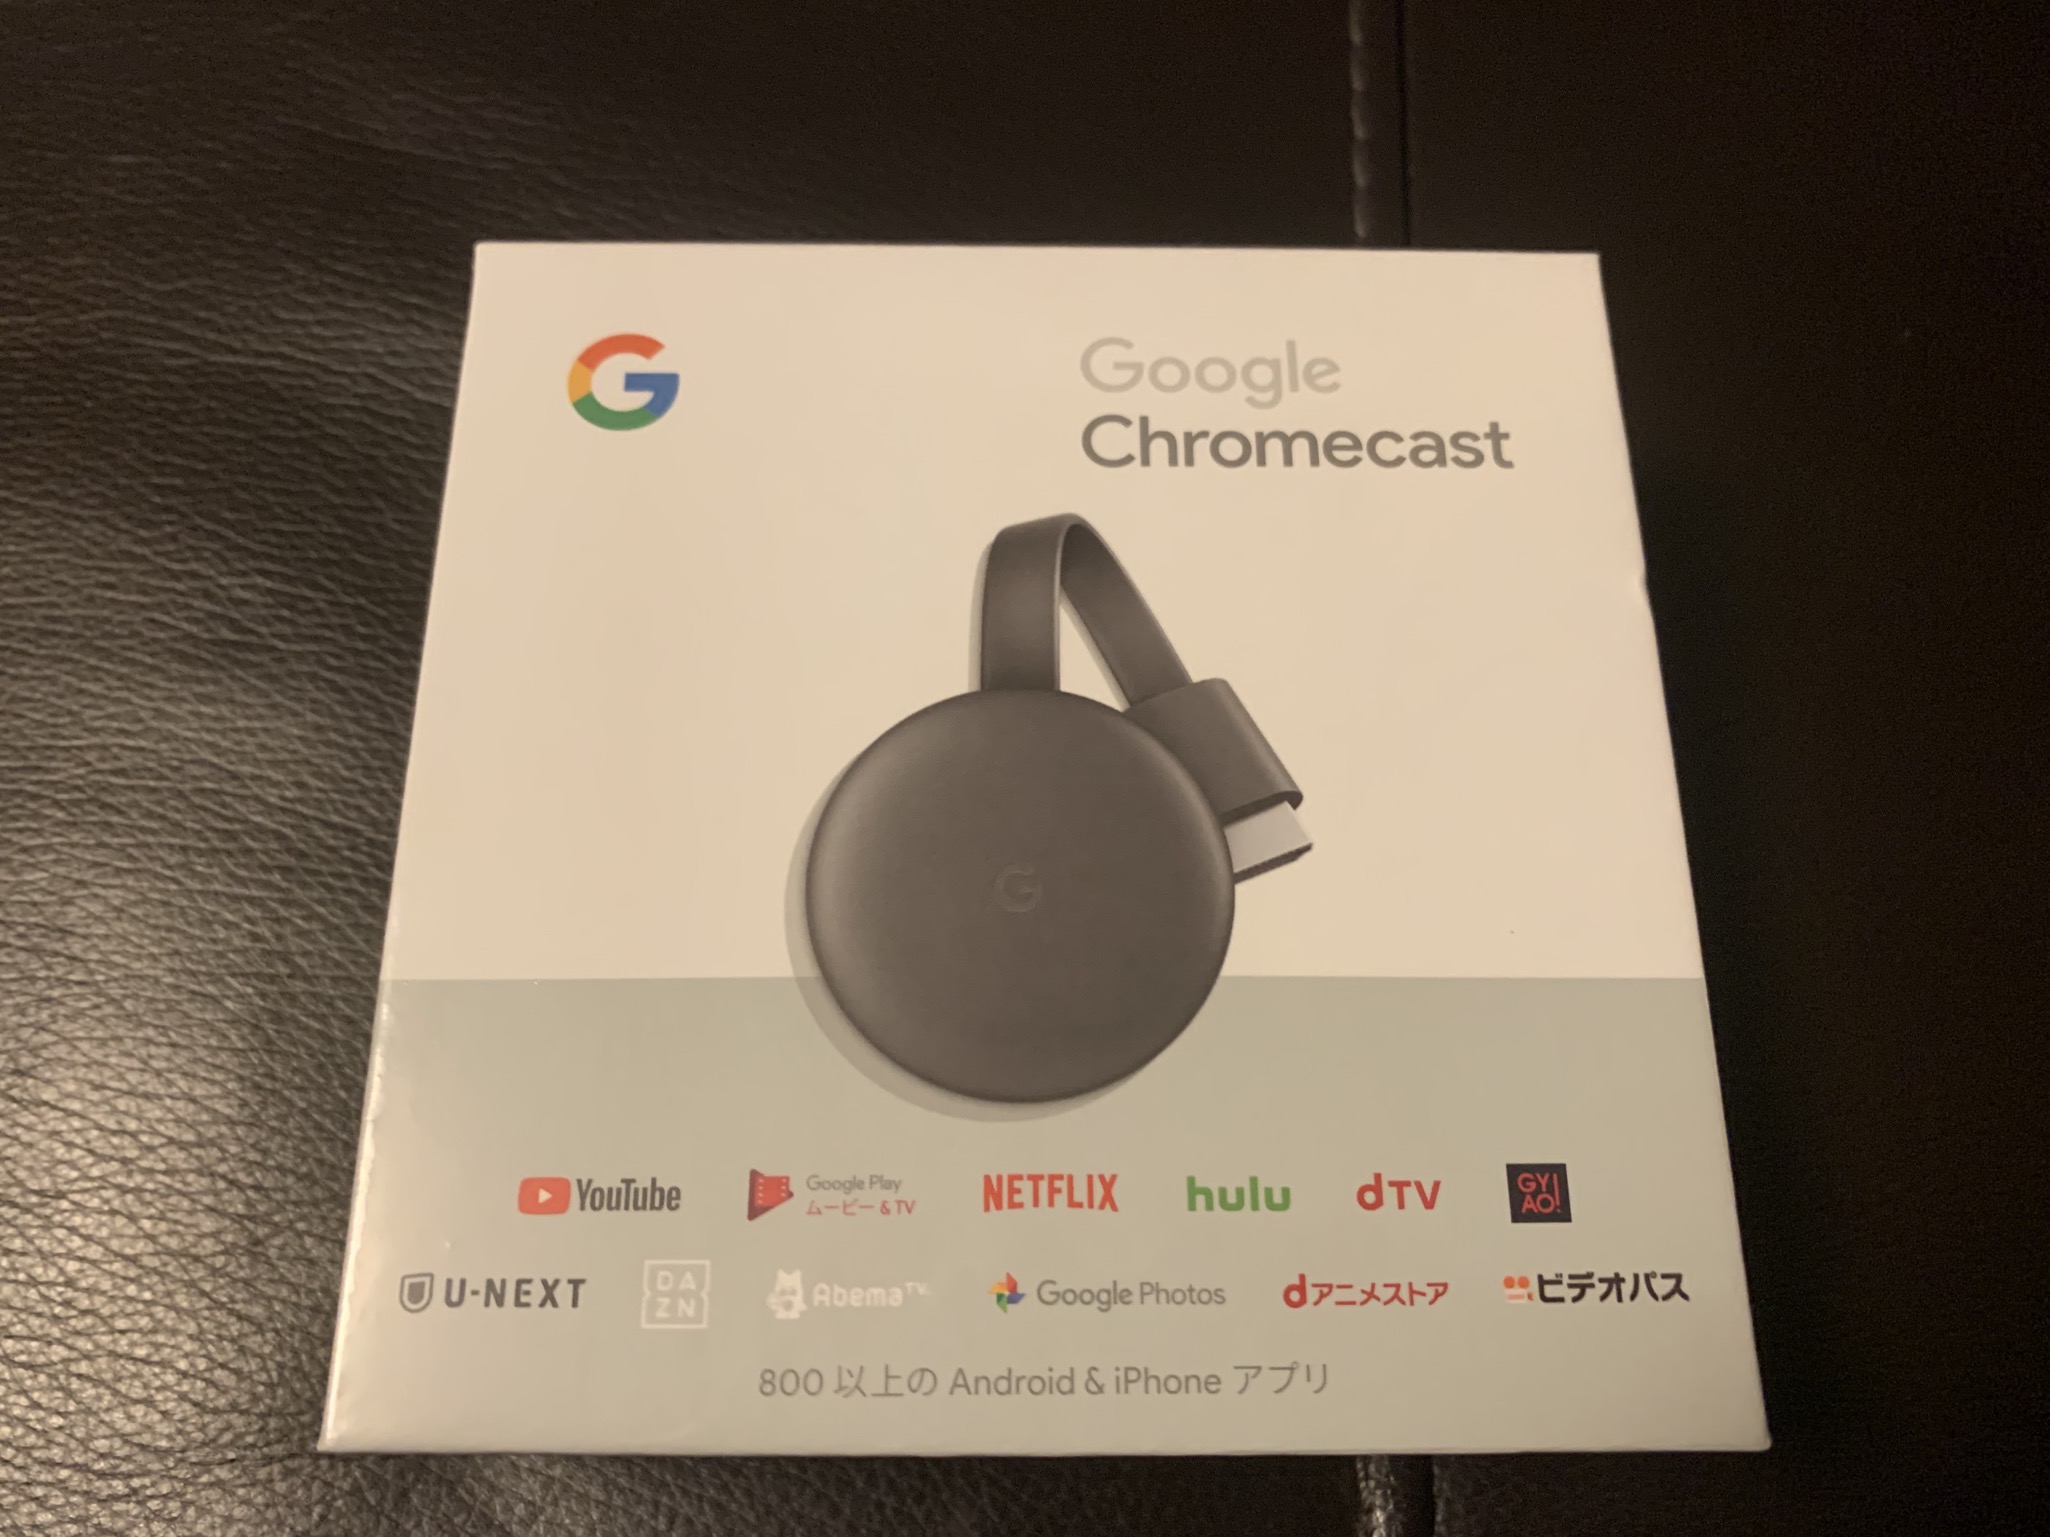 YouTube動画をテレビで観たいがために、Google Chromecastを買った